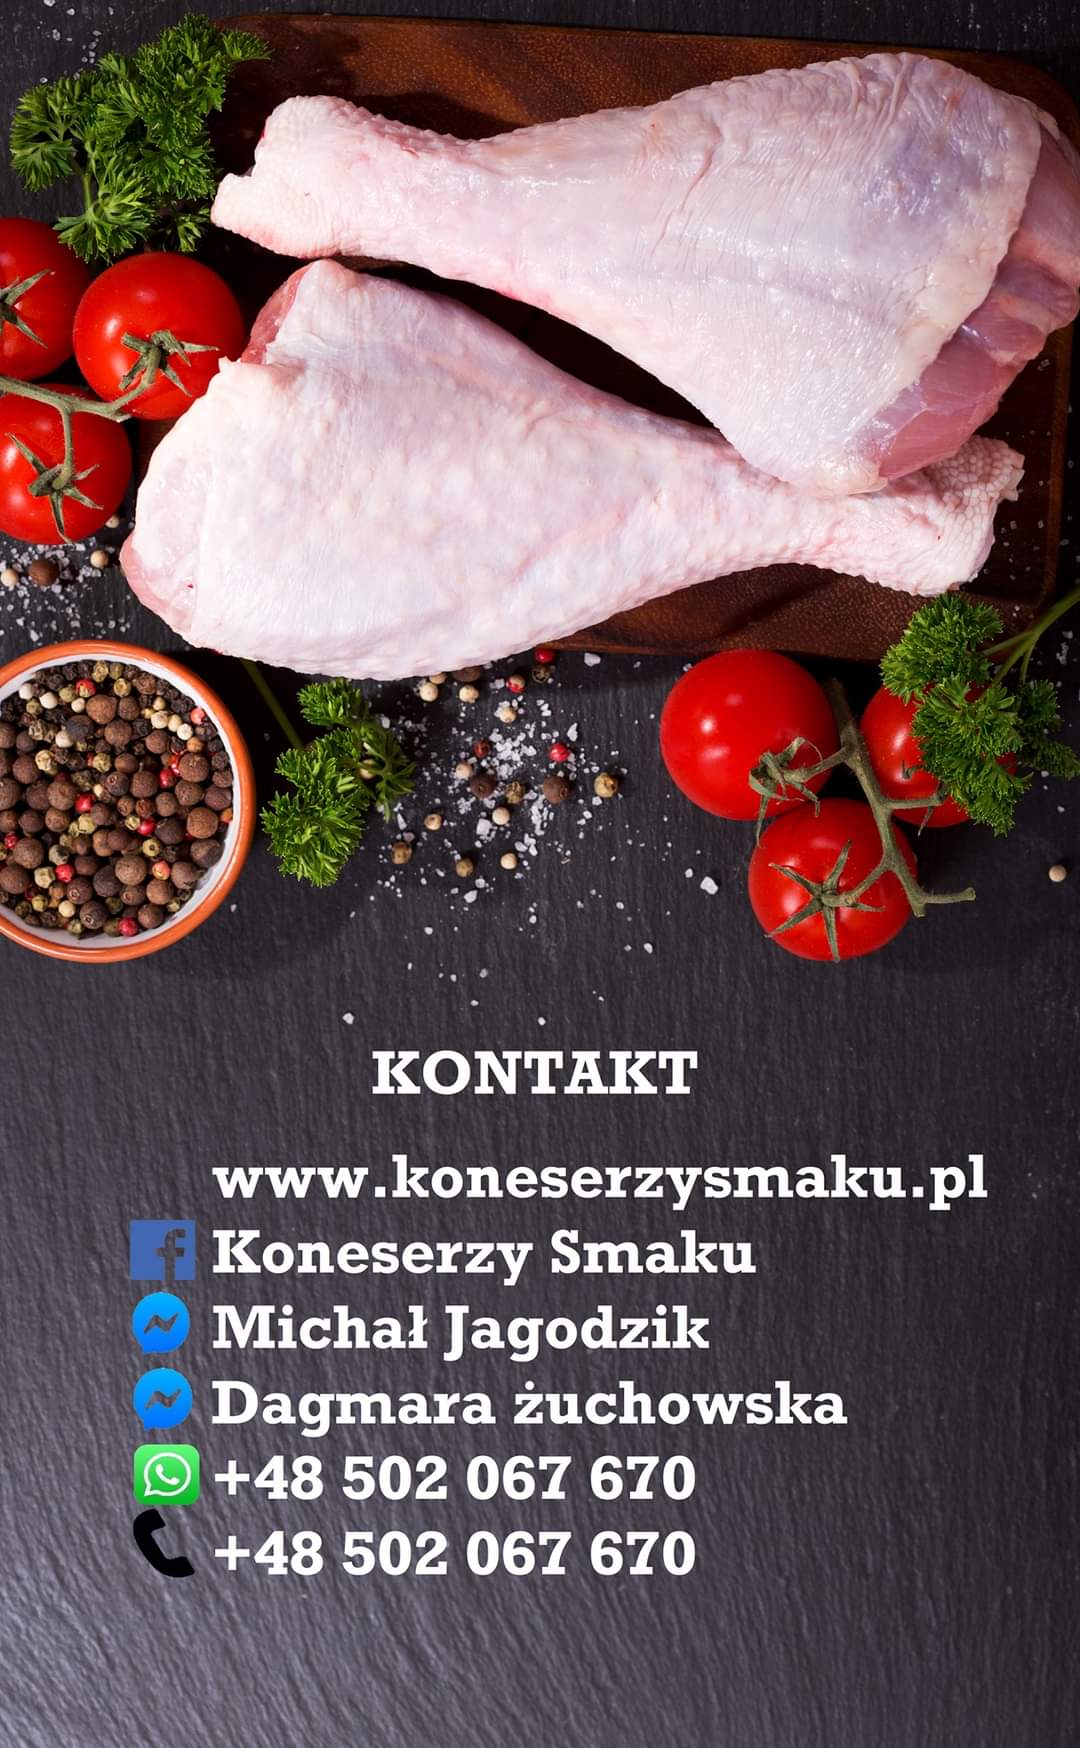 Polskie wyroby pod same dzwi www.koneserzysmaku.pl 